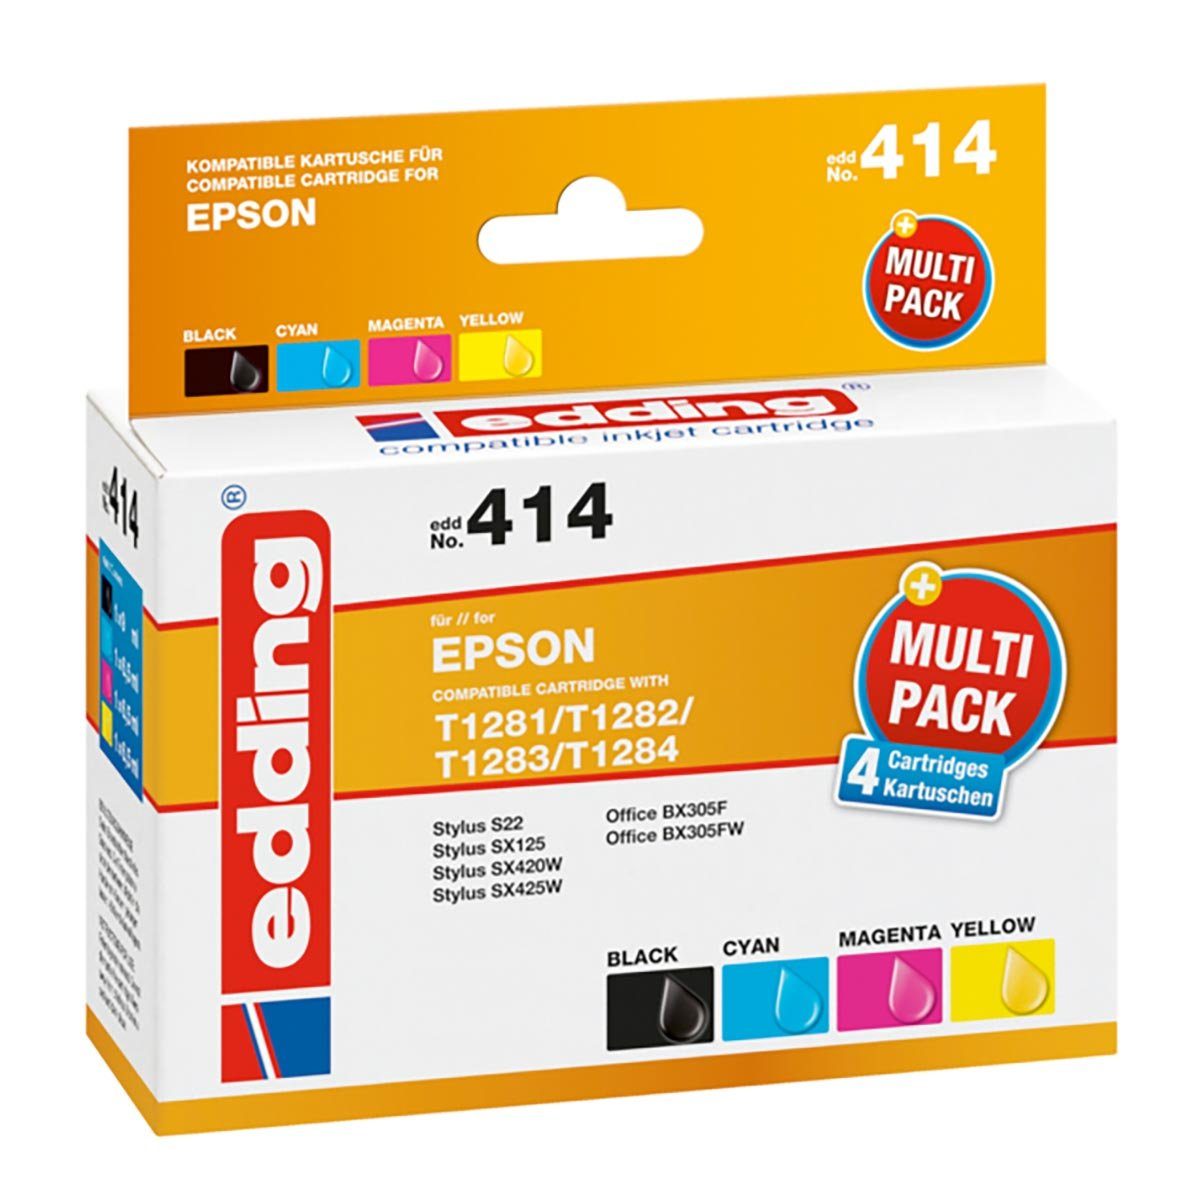 edding Edding Multipack edd No. 414 für Epson T1285 Tintenpatrone (kompatibel, mehrfarbig)